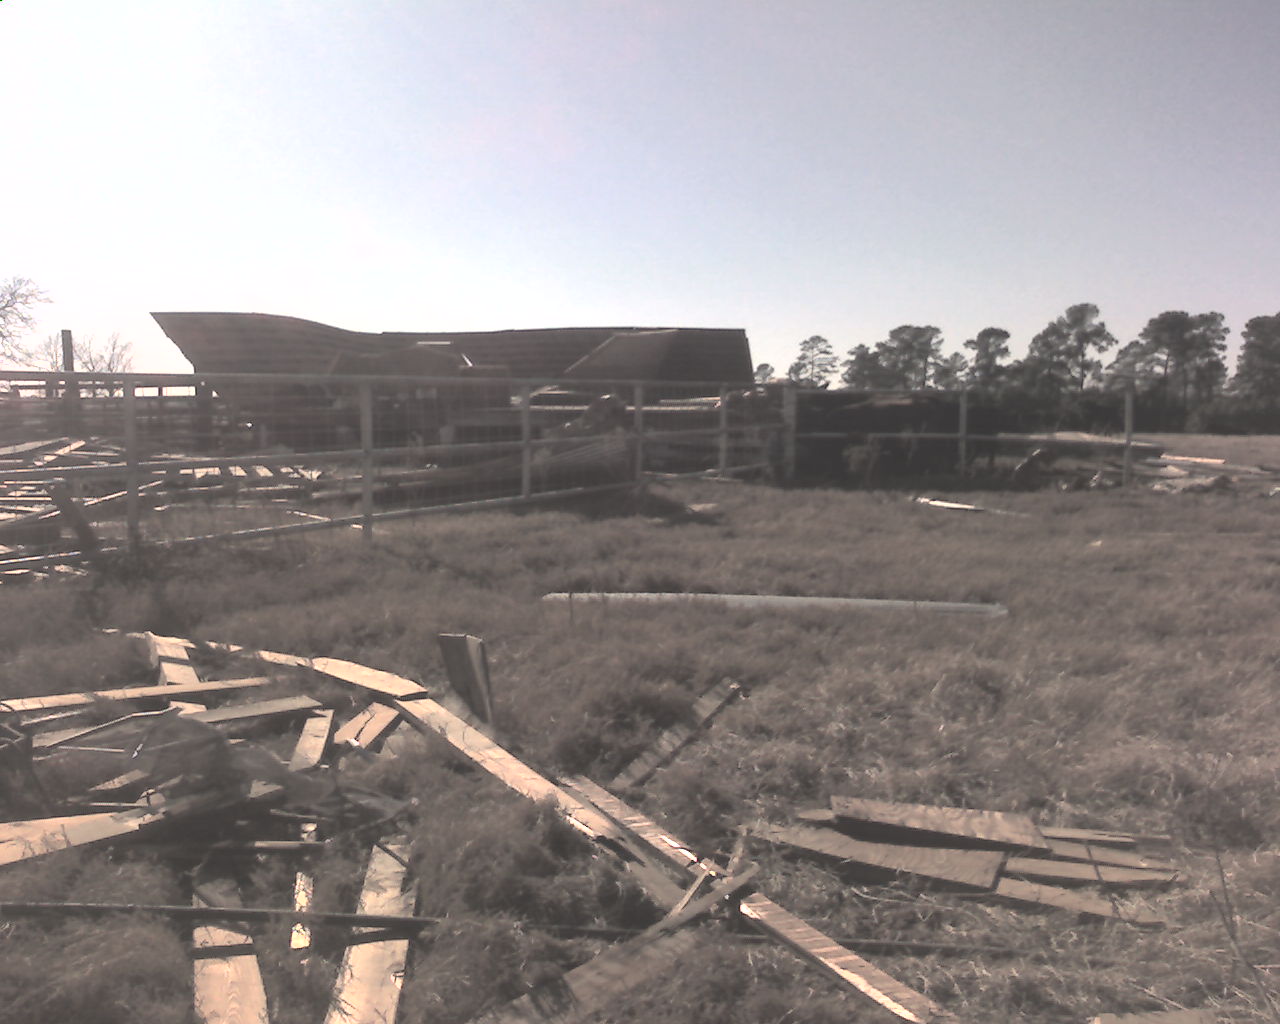 Large barn destroyed